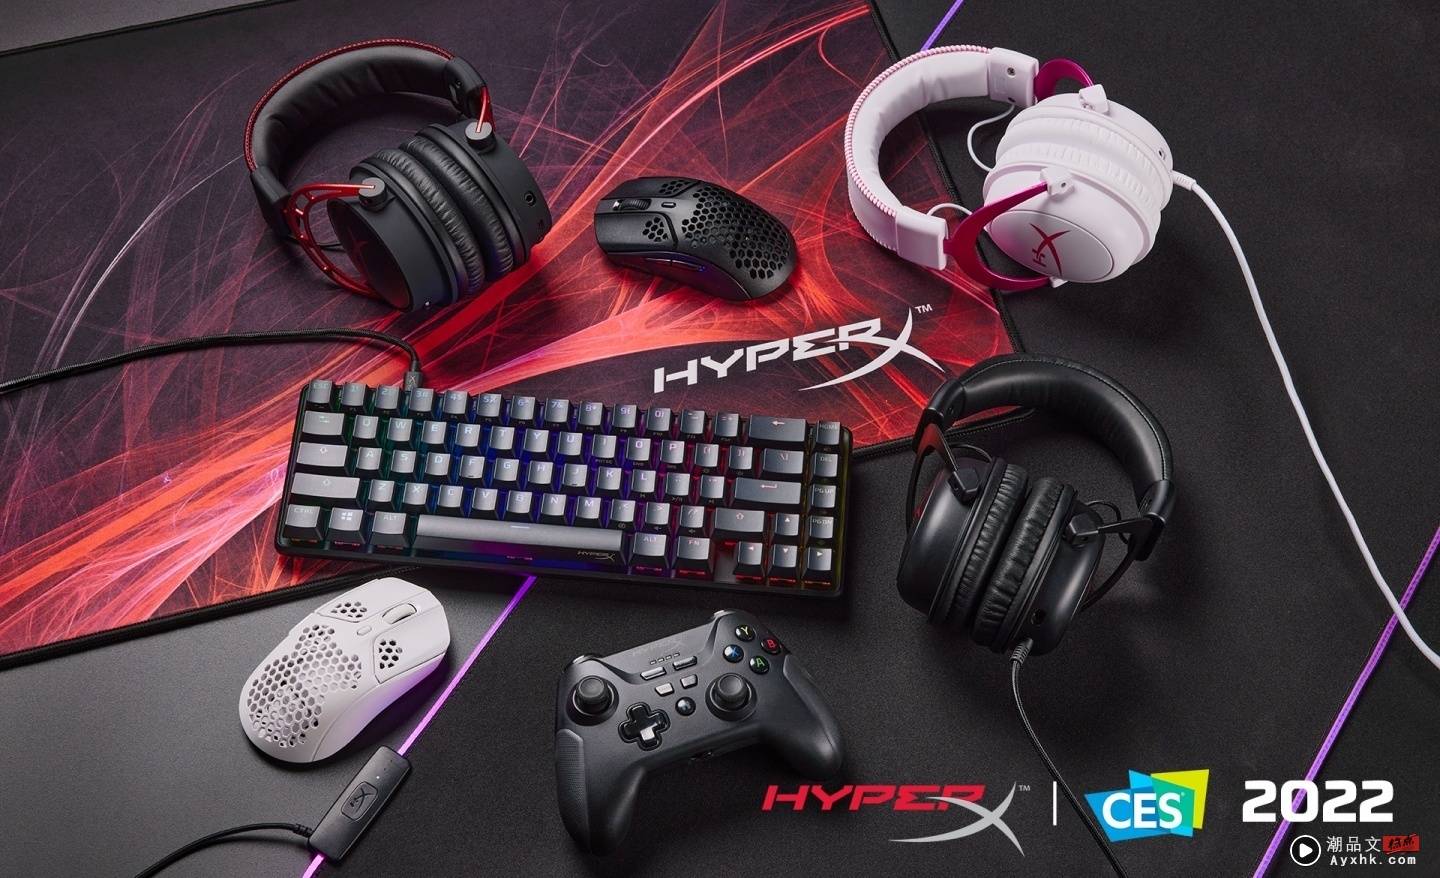 HyperX 带来六项全新电竞产品！包含耳机、鼠标、机械式键盘，还推出了首款游戏摇杆！ 数码科技 图1张